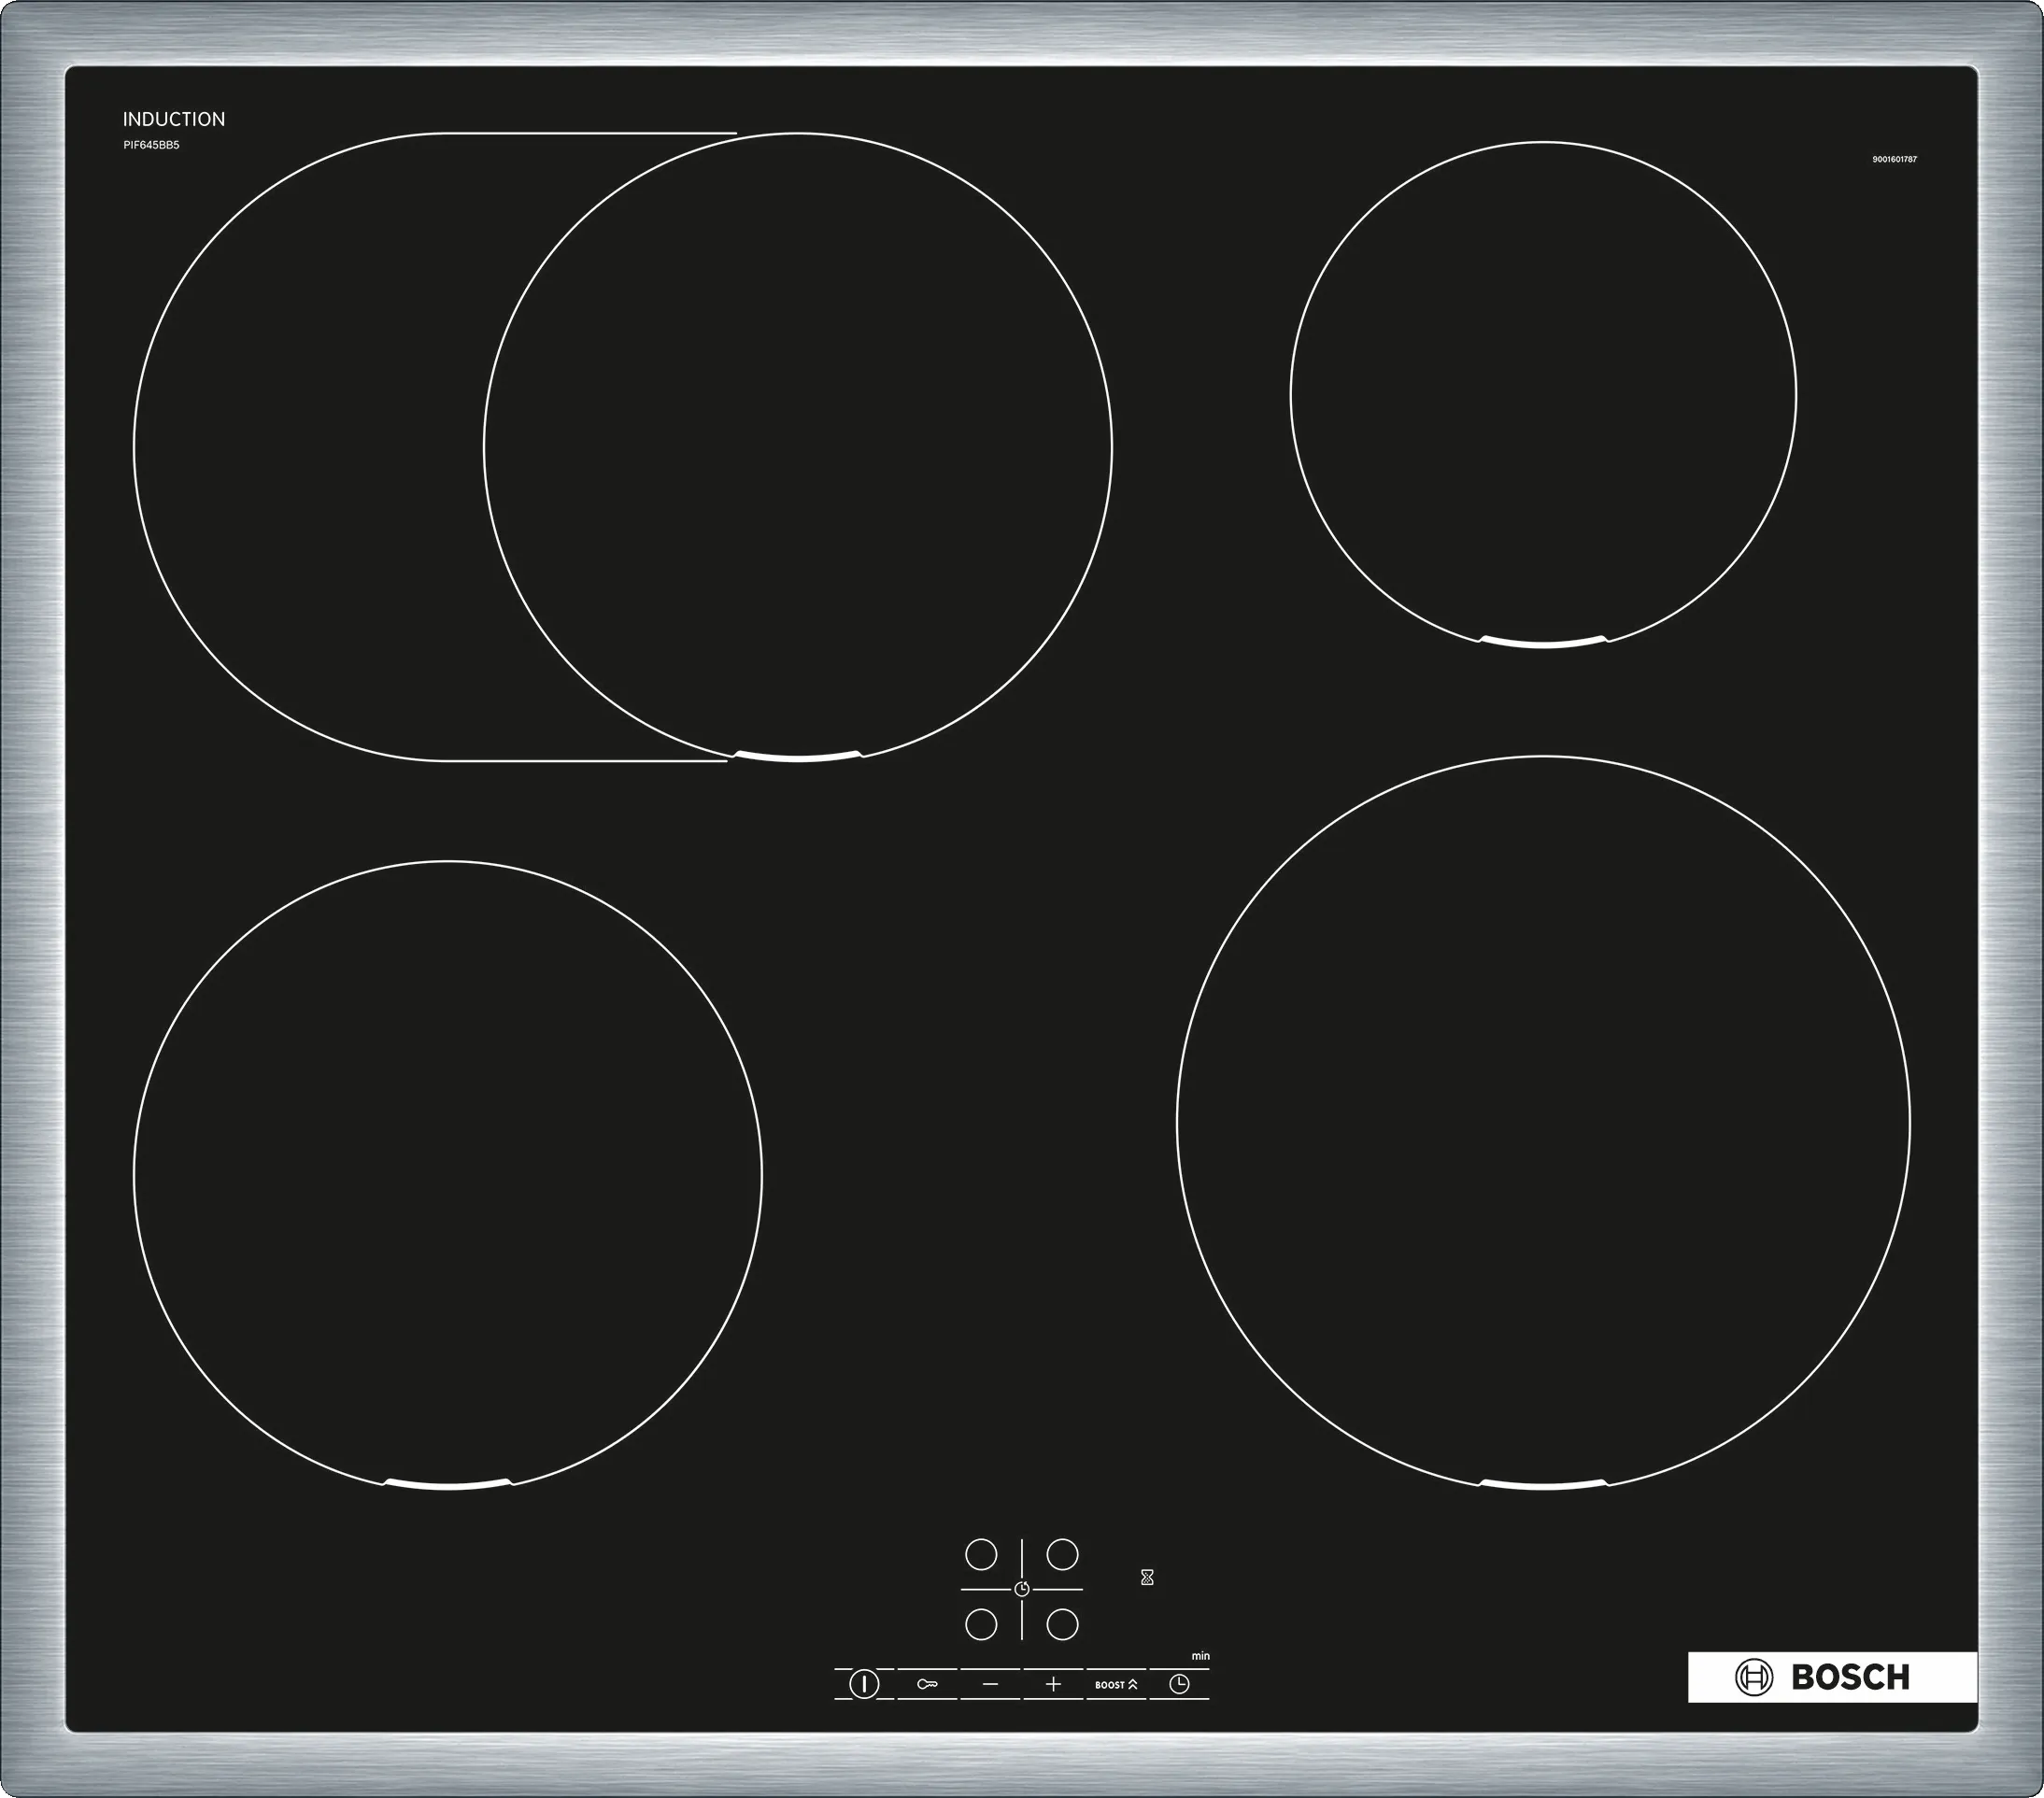 Serija 4 Indukciona ploča za kuvanje 60 cm Crna, ugradnja sa okvirom 